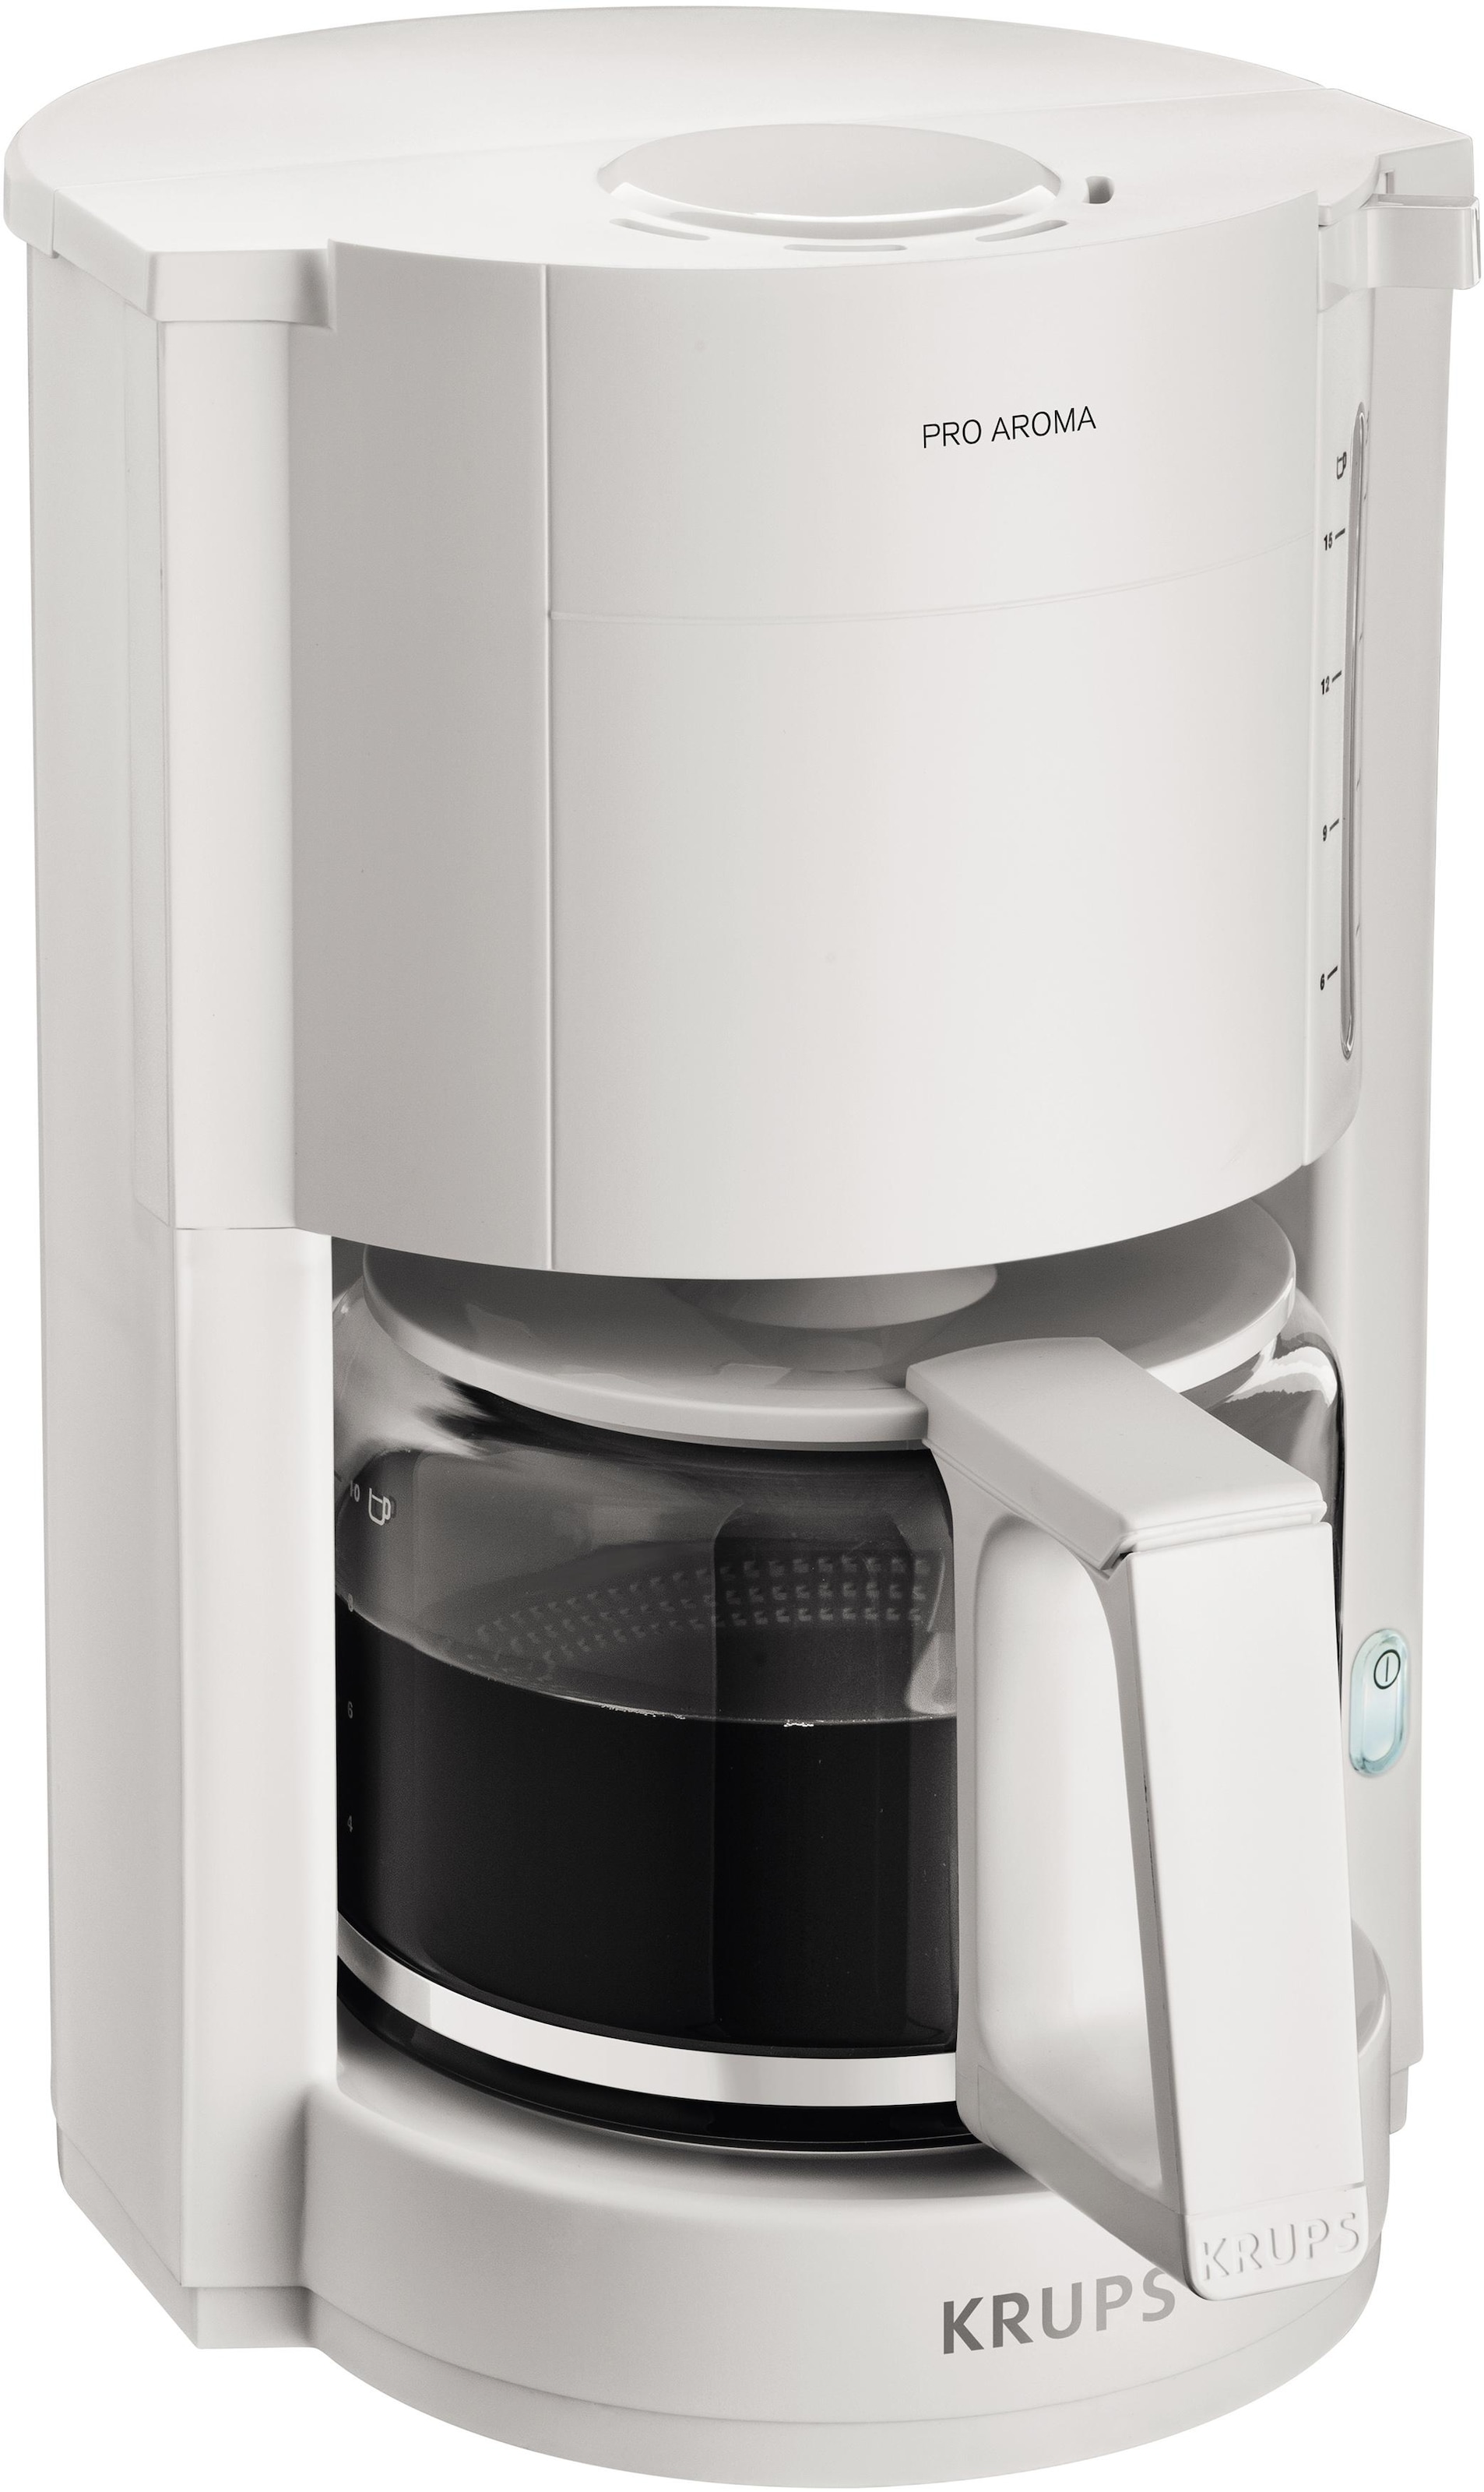 W 1050 Warmhaltefunktion, Aroma«, OTTO Krups Automatische Pro »F30901 Filterkaffeemaschine Abschaltung, jetzt bei